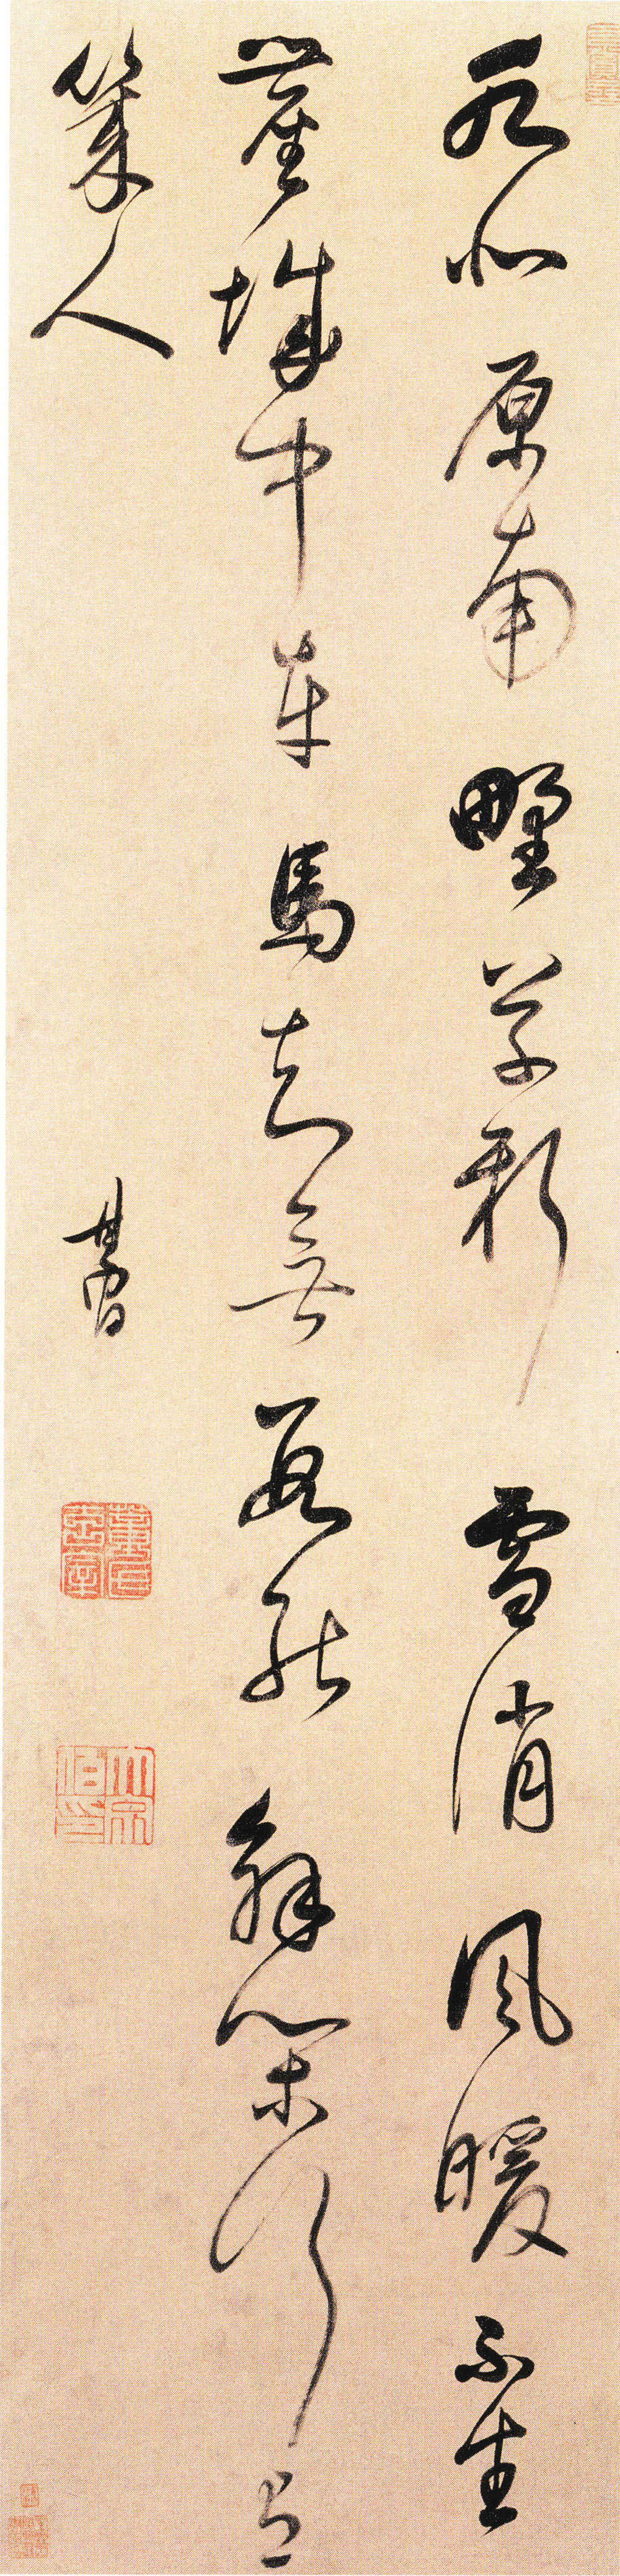 董其昌行书《张籍七言诗》轴 -北京故宫博物院藏 (图1)